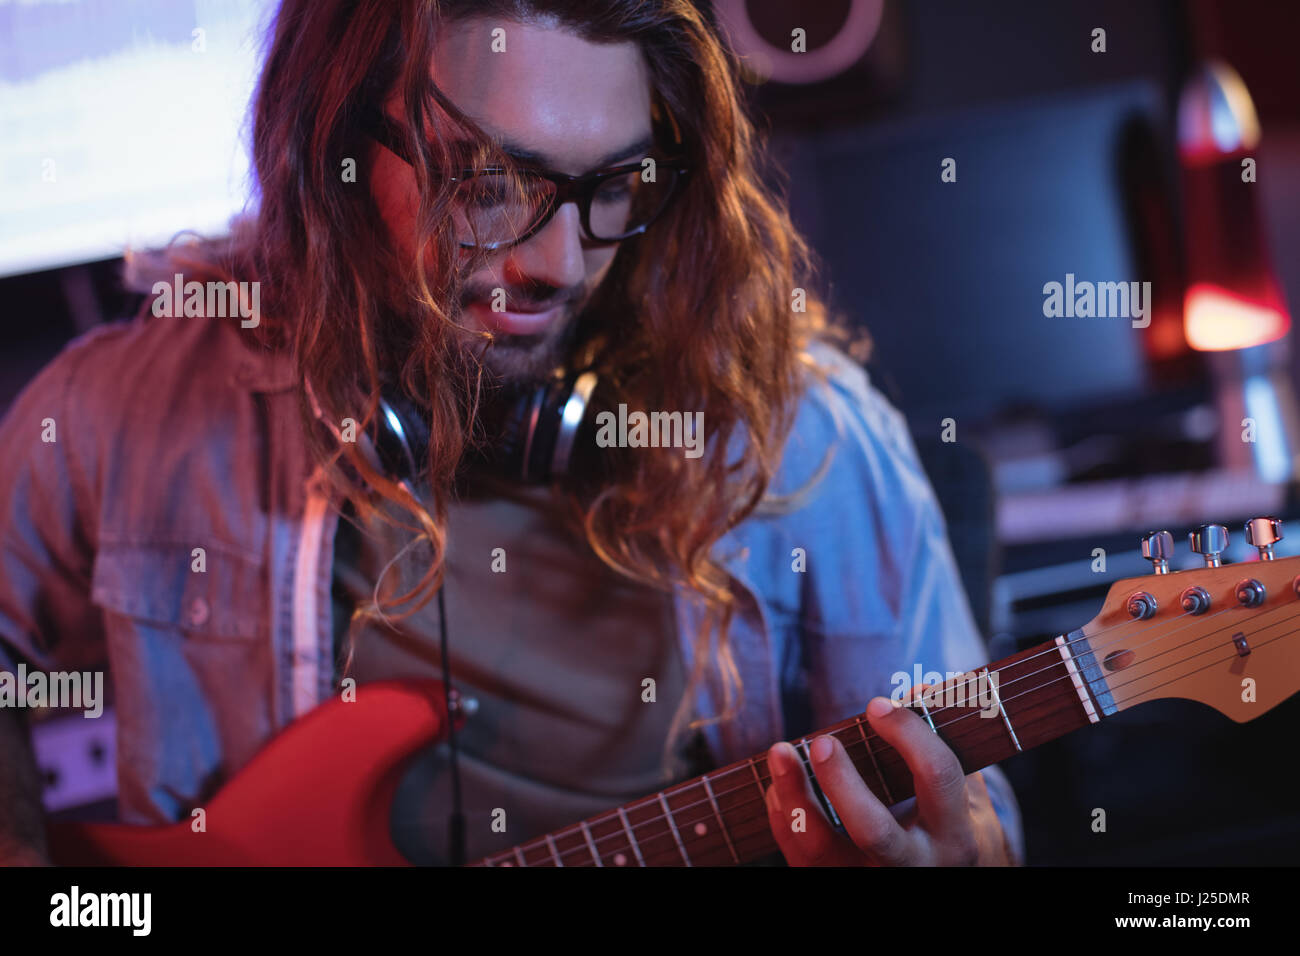 Close-up of male ingénieur du son playing electric guitar en guitare électrique Banque D'Images